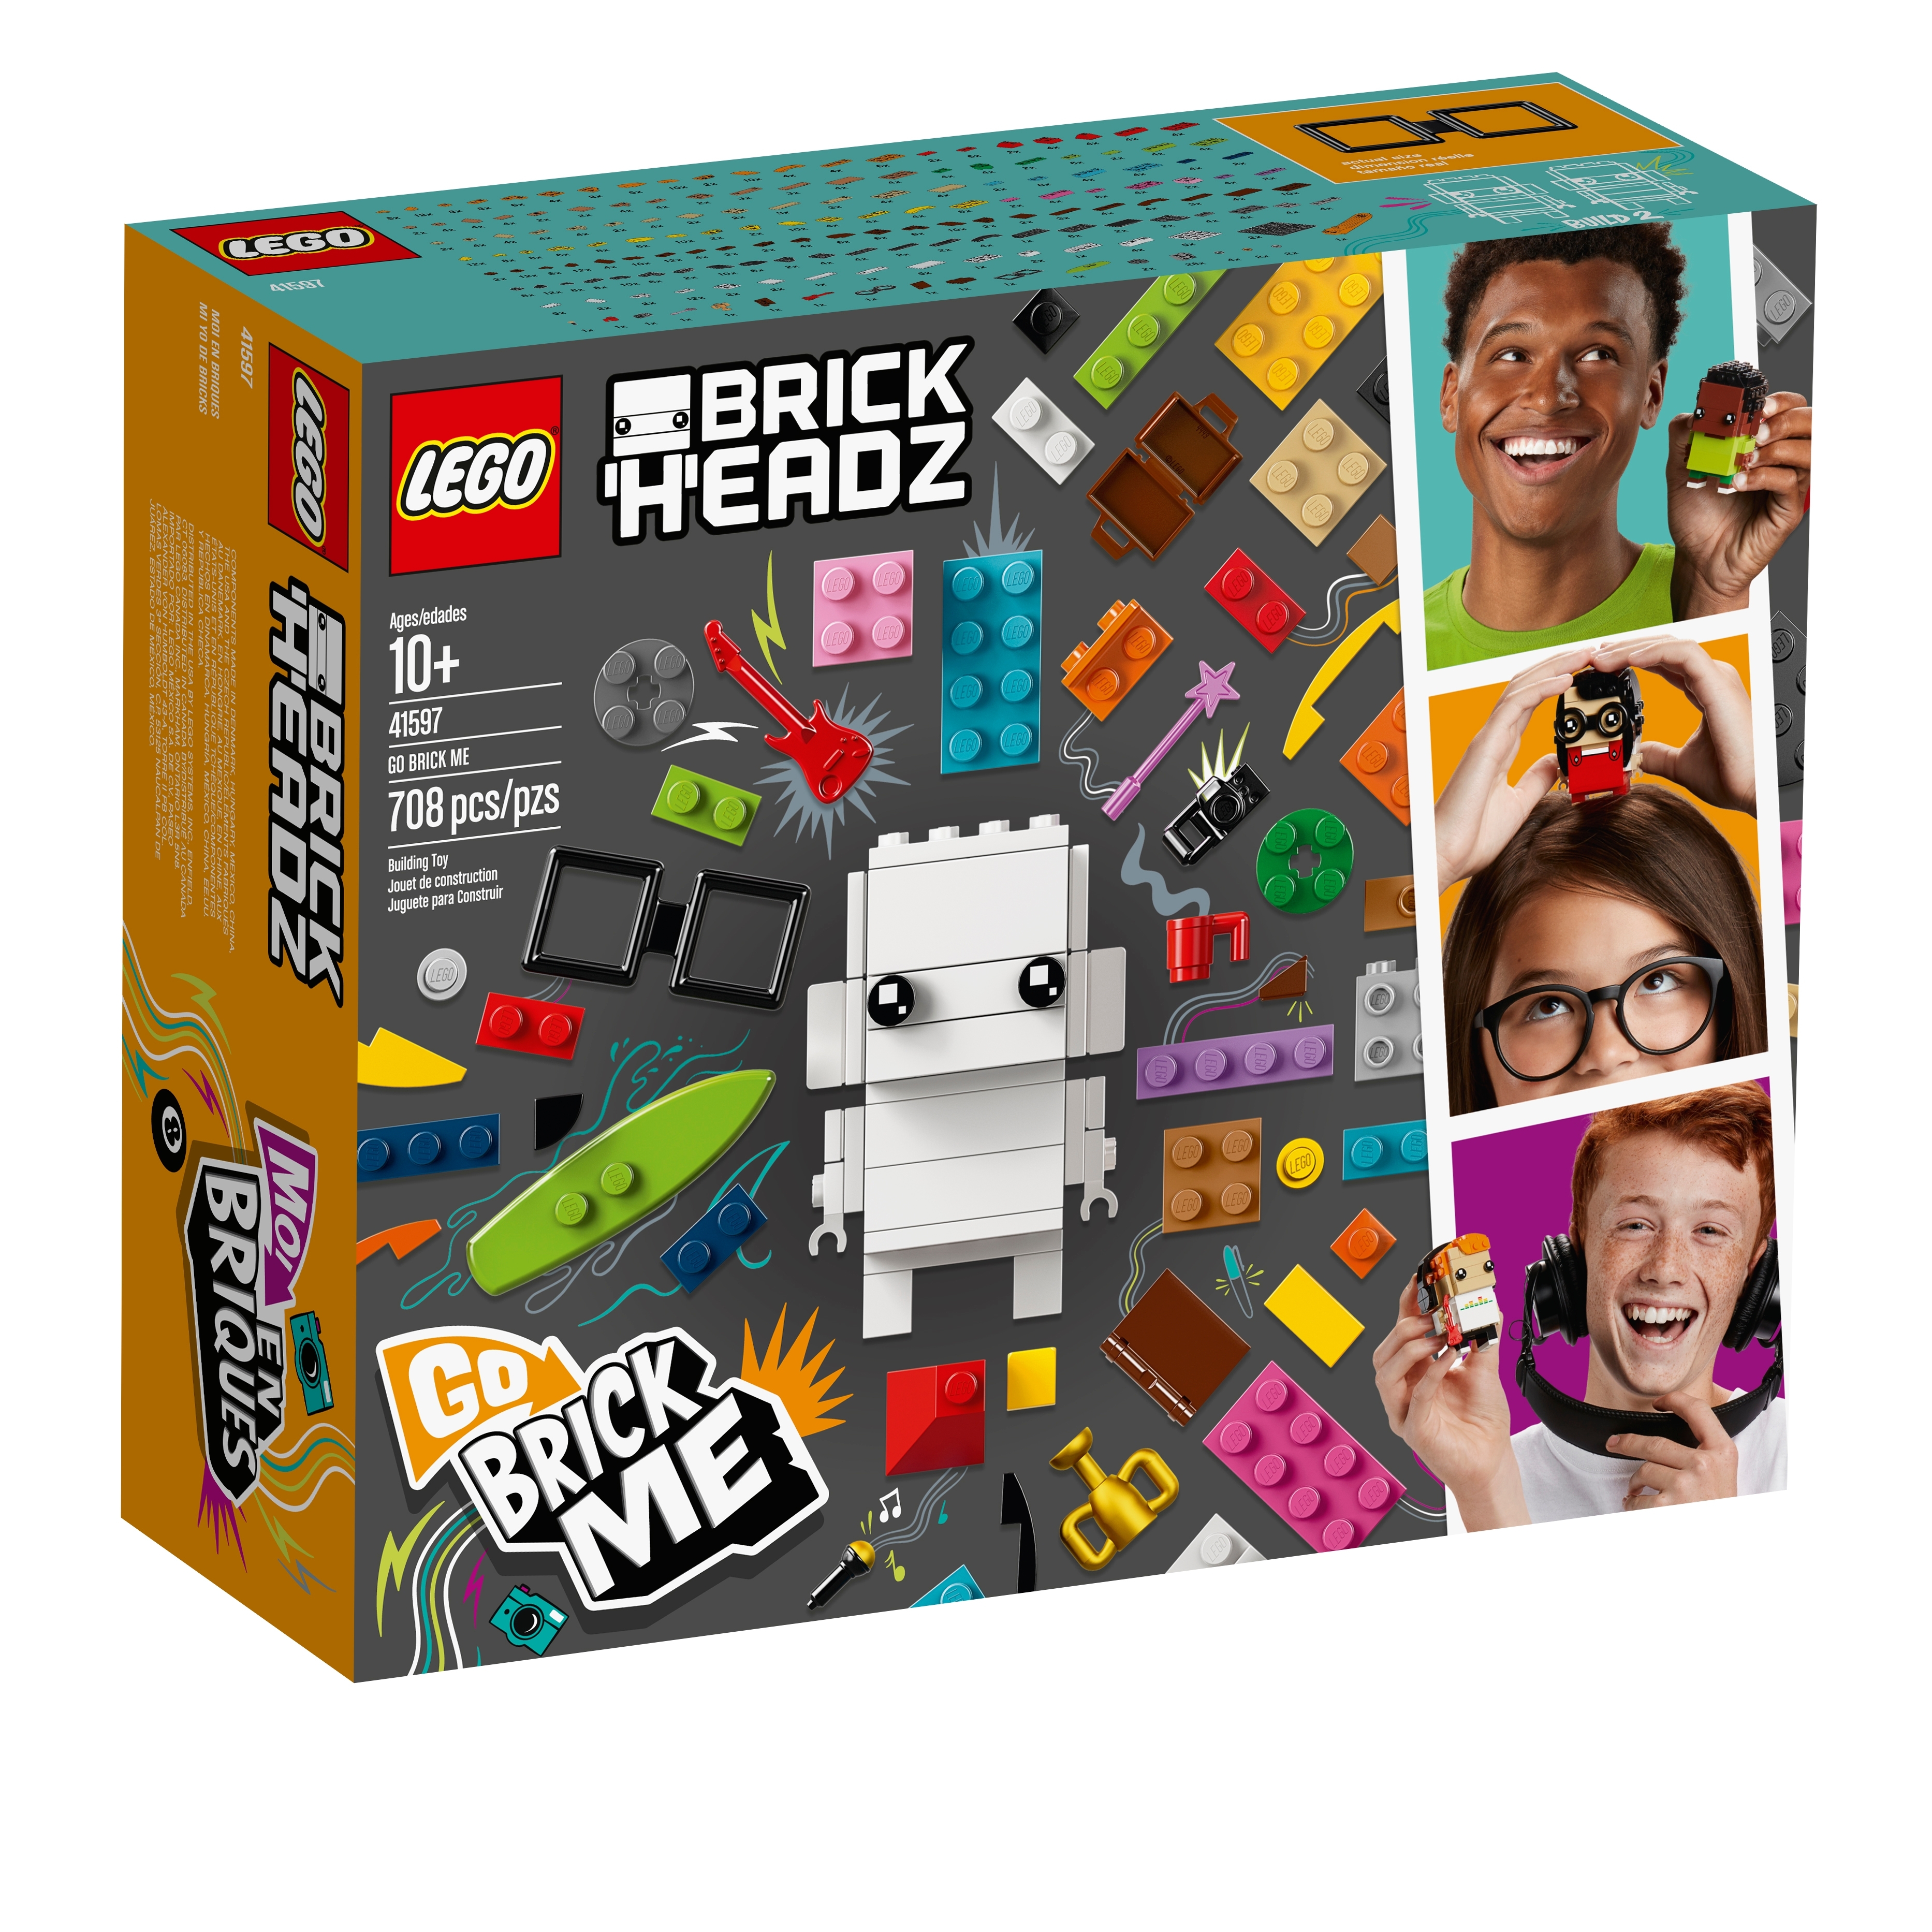 Go Brick Me 41597 | BrickHeadz | Buy 